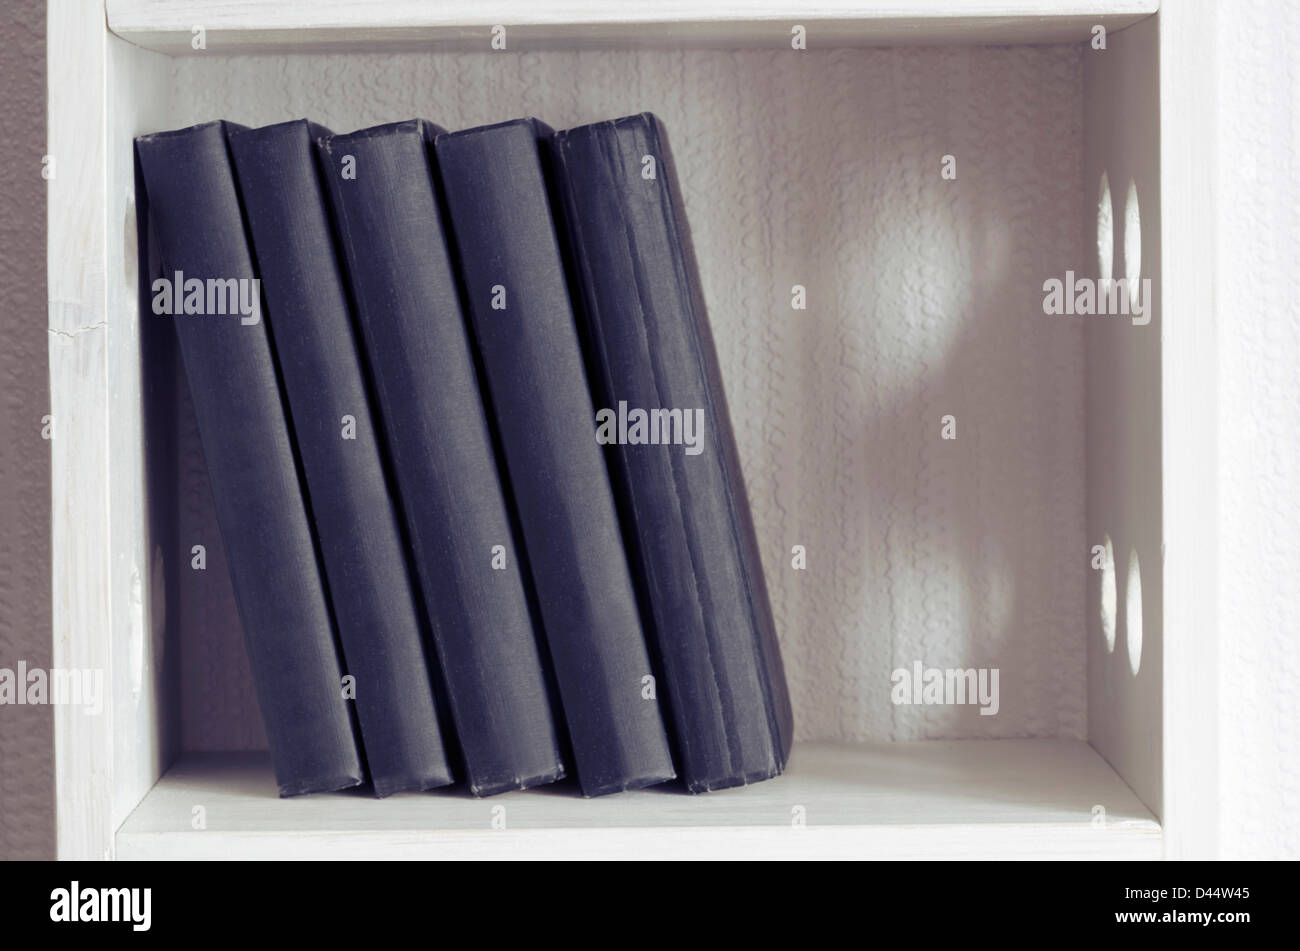 Cinque libri simili libri nero su bianco scaffale Foto Stock